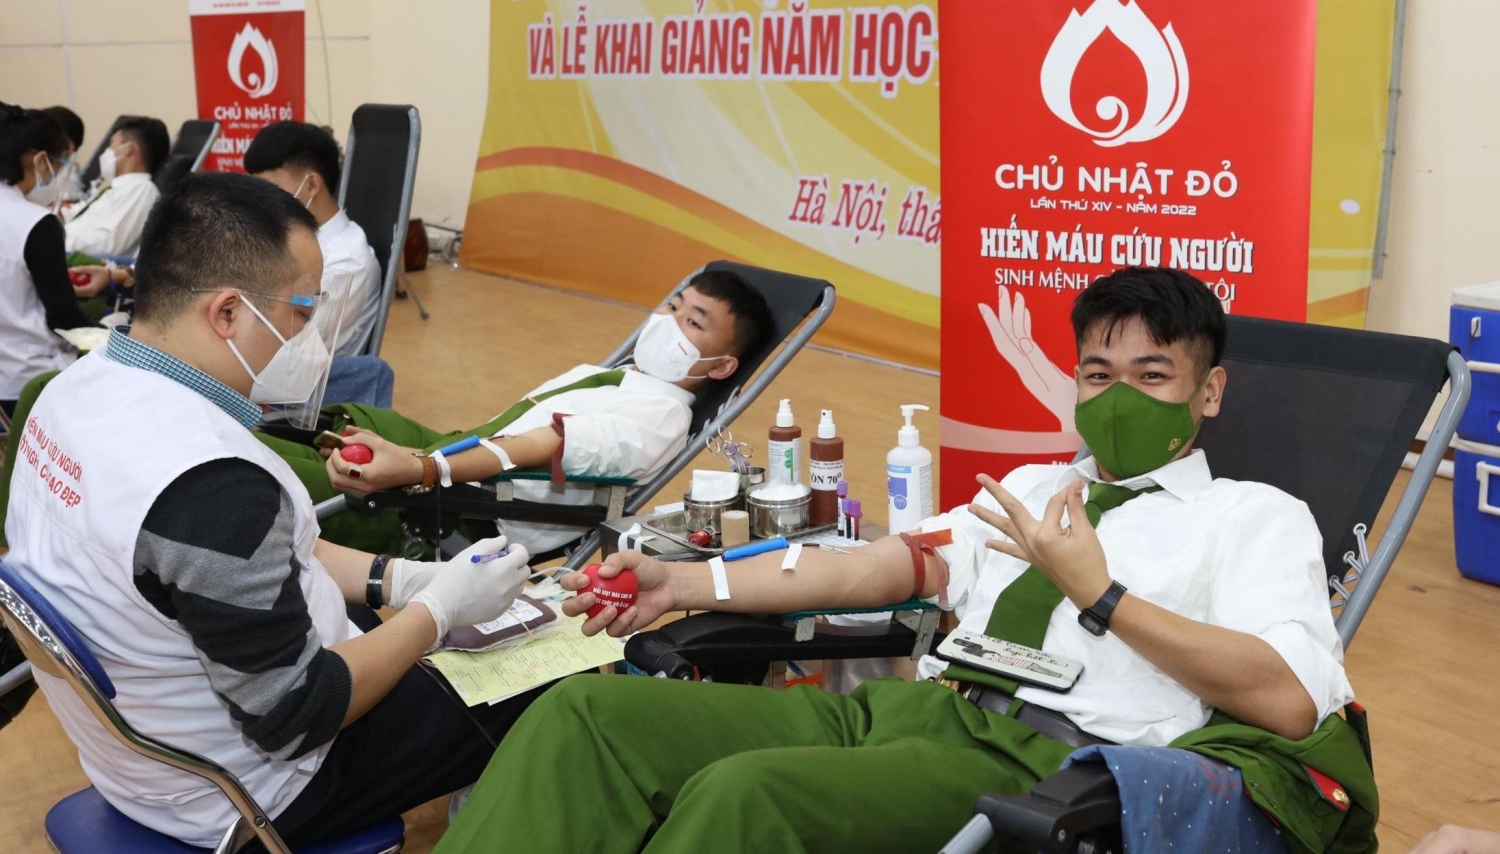 Chủ nhật Đỏ 2022 góp phần “cứu cánh” cho ngành y tế, người bệnh cần truyền máu